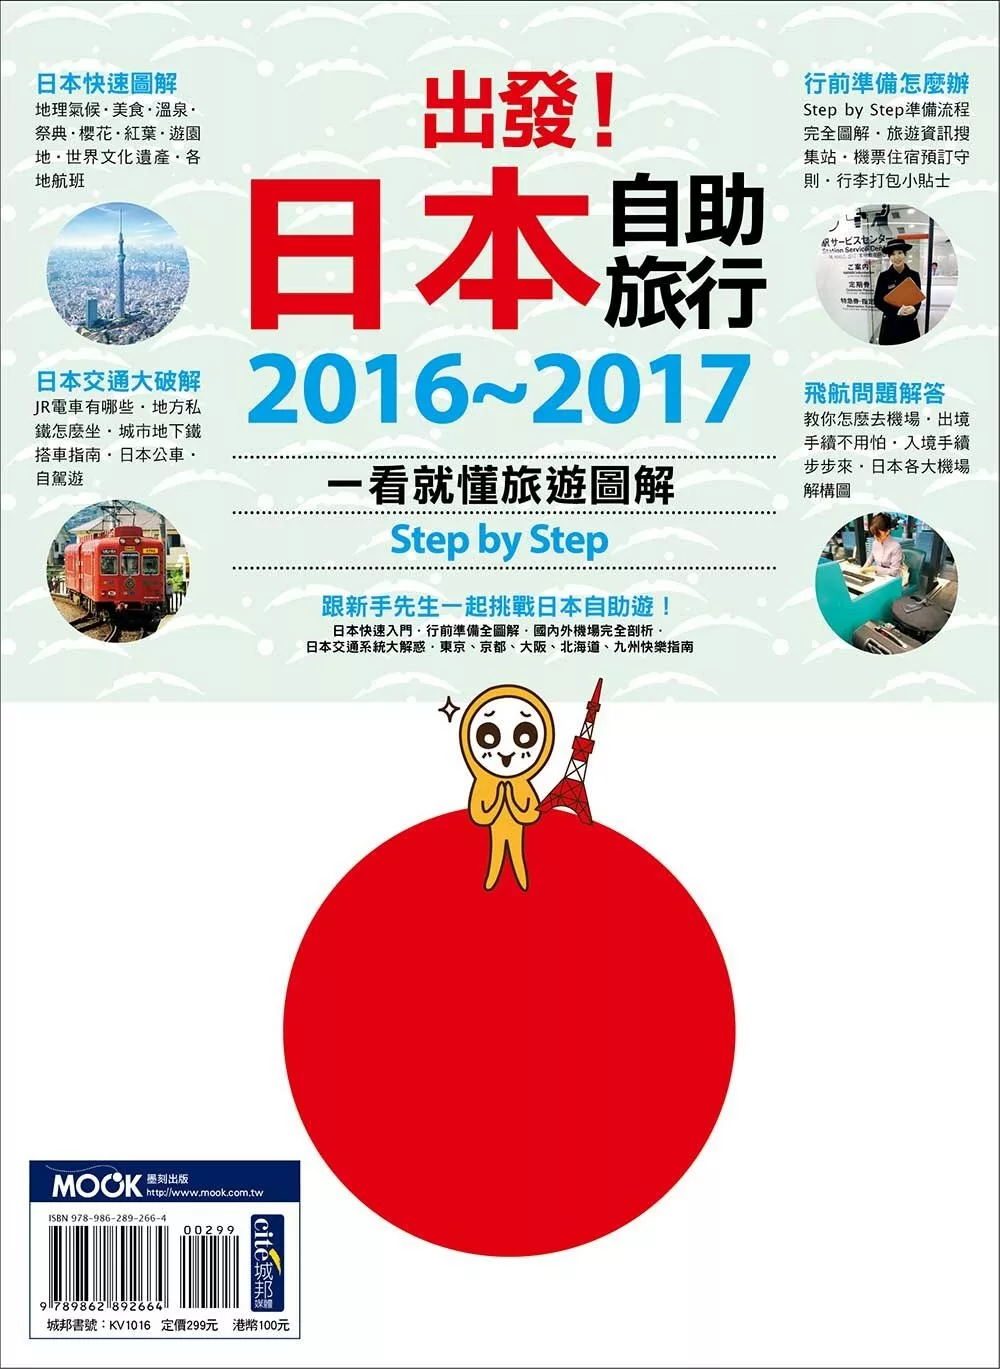 出發！日本自助旅行─一看就懂 旅遊圖解Step by Step 2016-2017